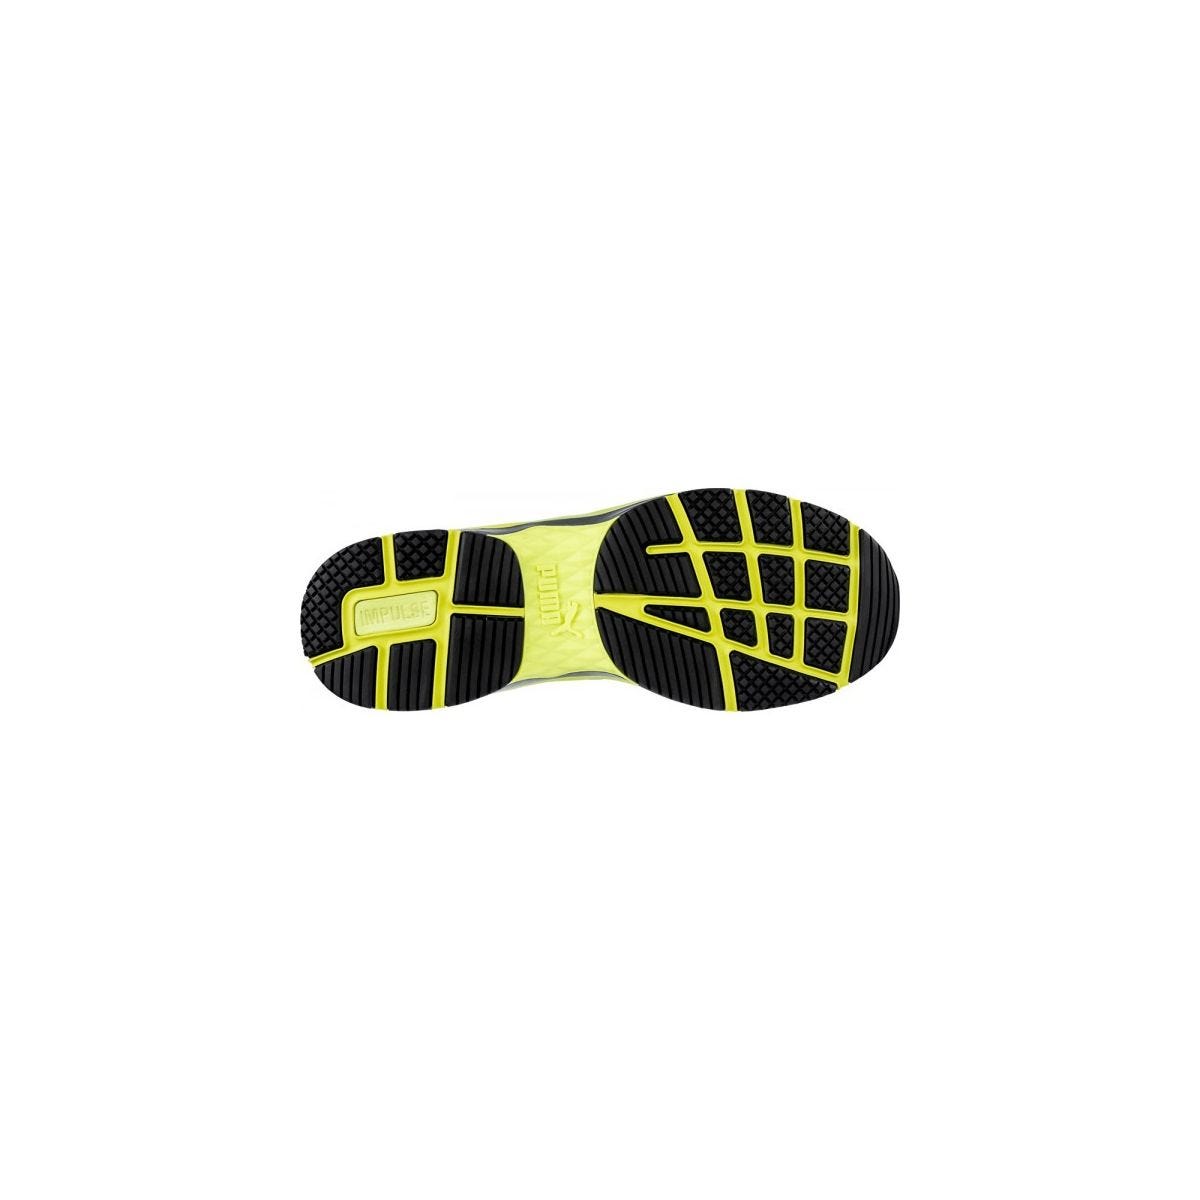 Chaussures de sécurité Velocity 2.0 YELLOW MID S3 - Puma - Taille 39 4